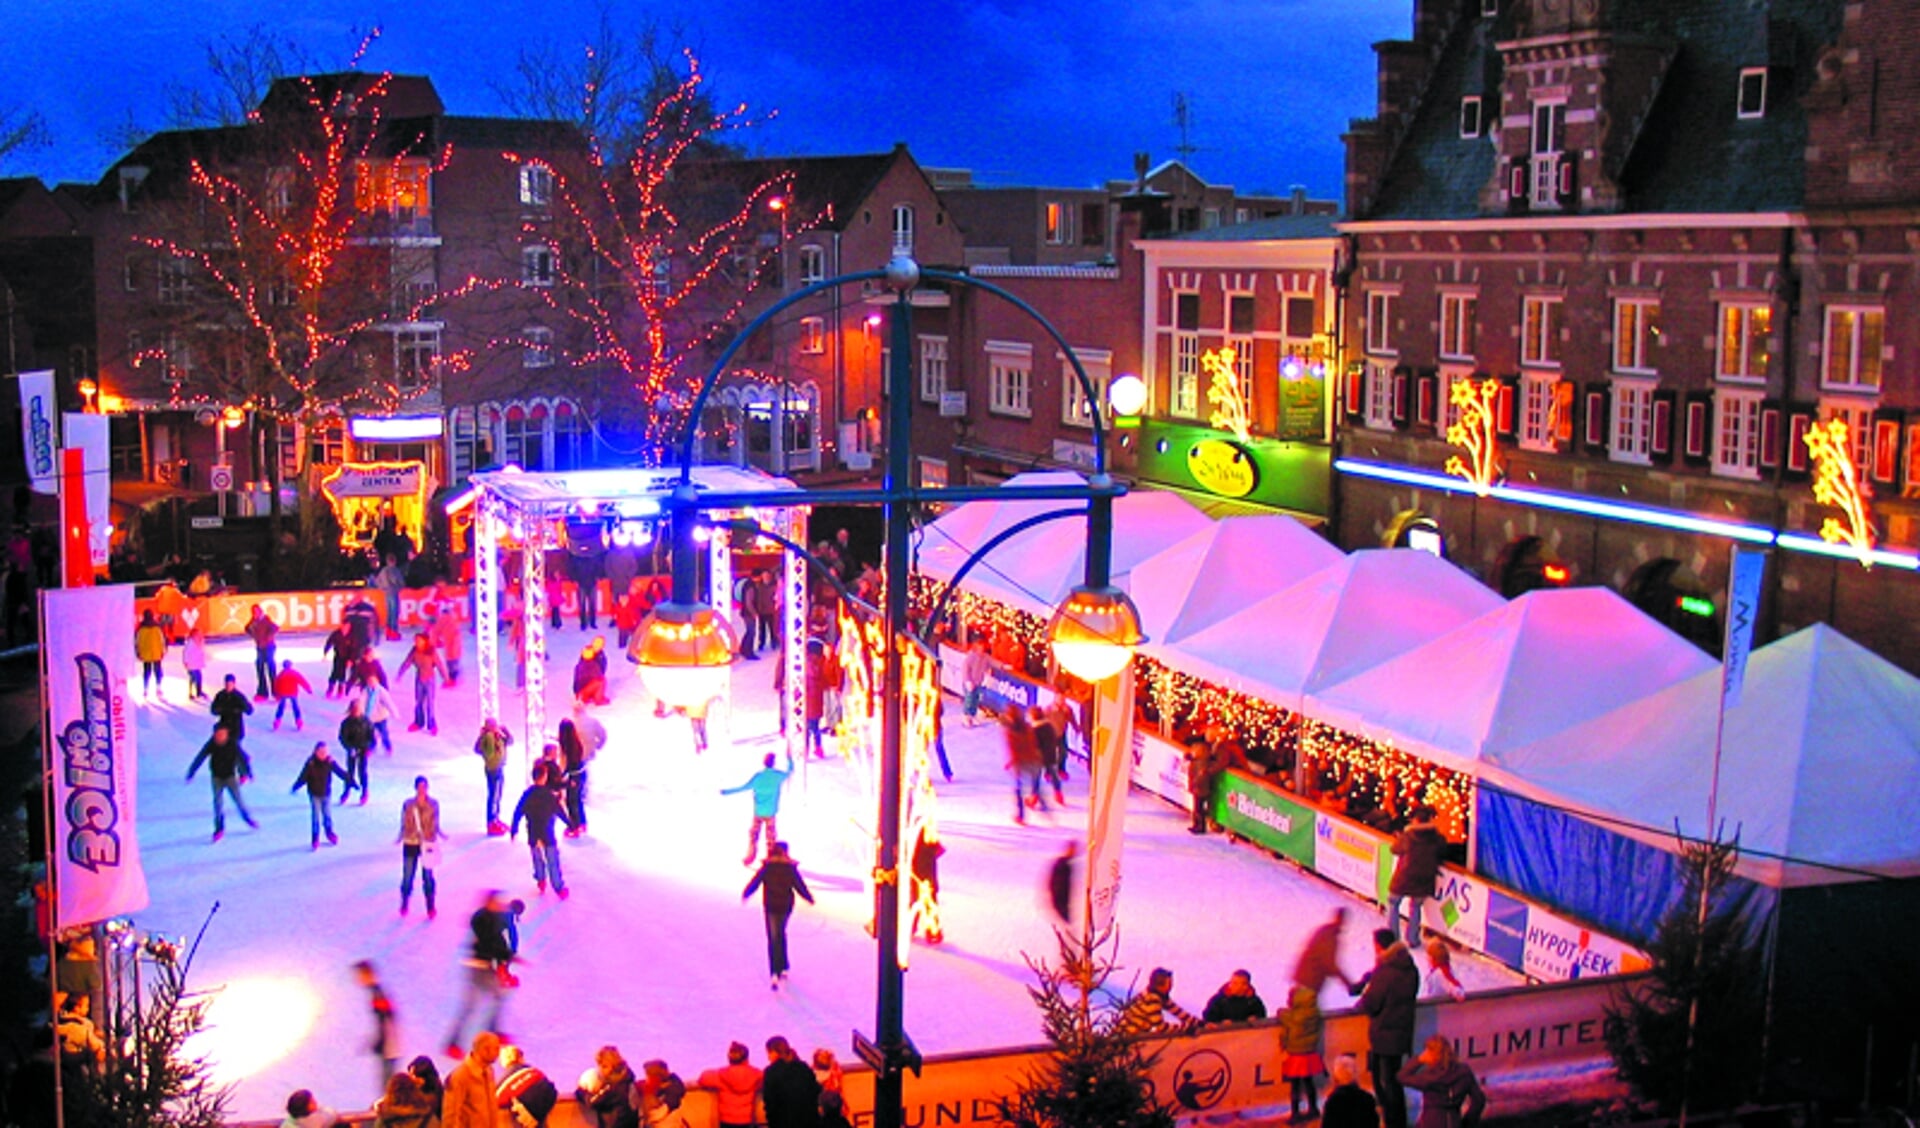 Voorbeeld van een ijsbaan die De IJsmeesters eerder heeft aangelegd in de binnenstad van Almelo. (Foto: aangeleverd)